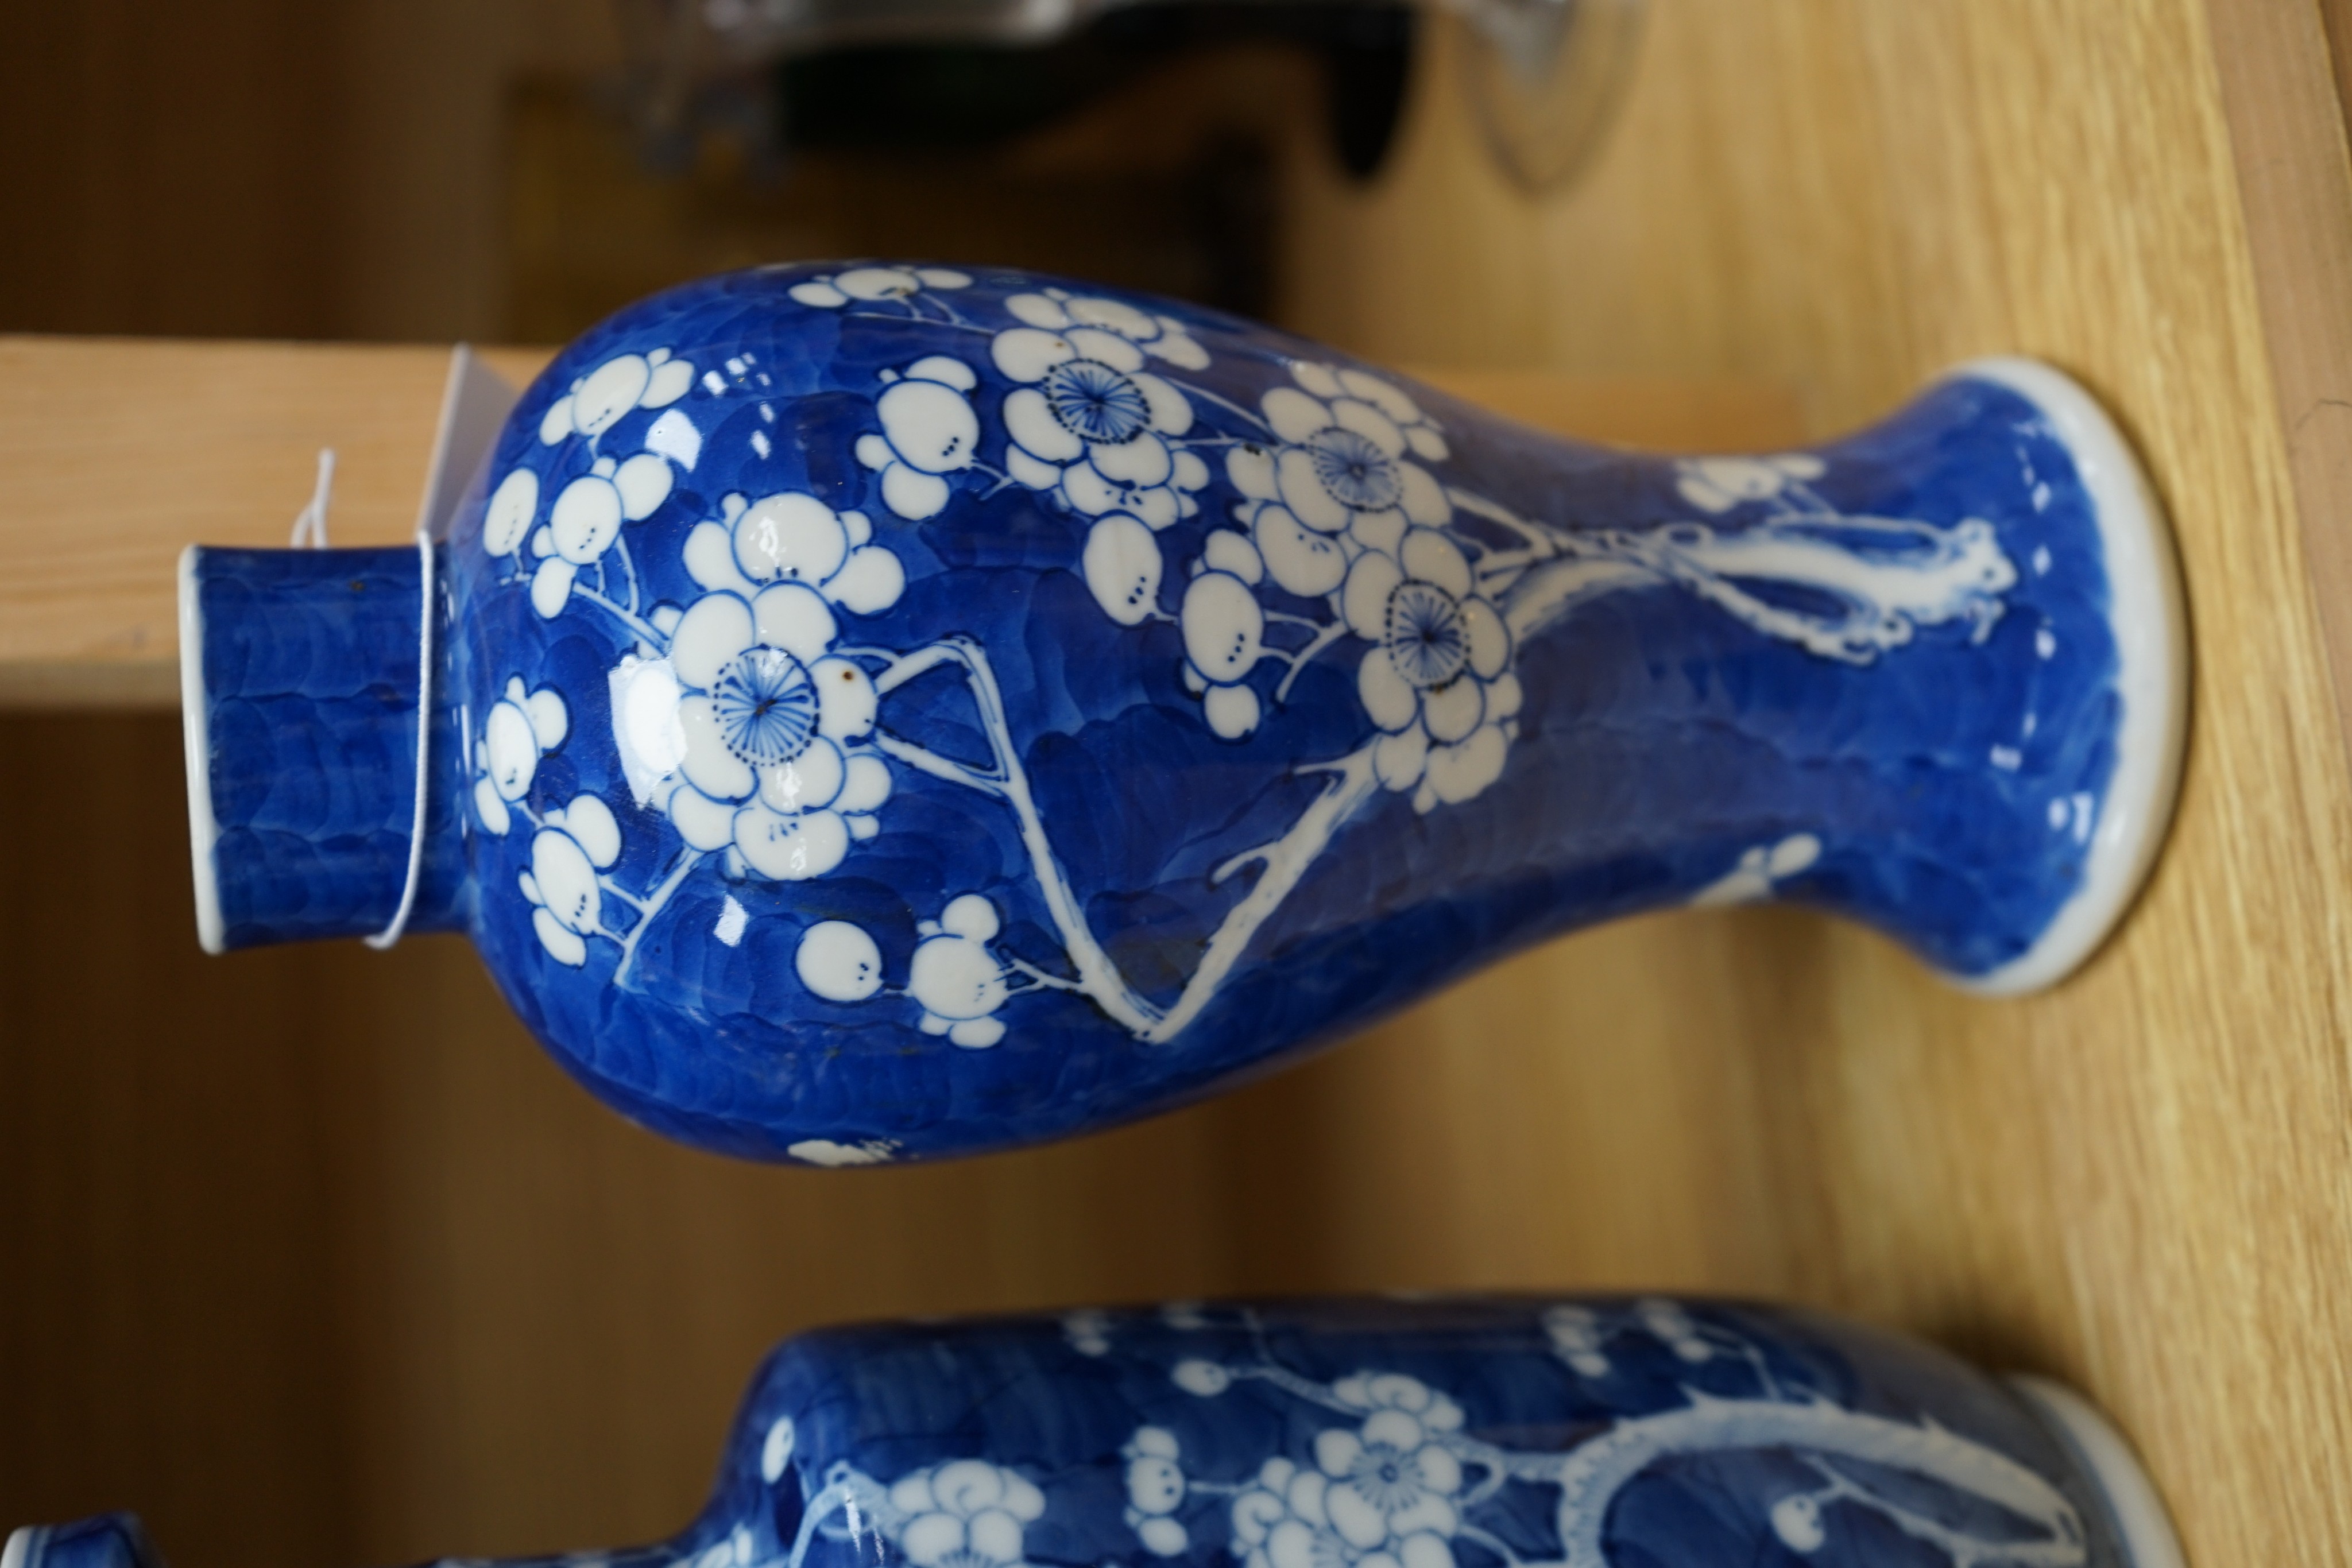 Three Chinese blue and white prunus vases. 25.5cm